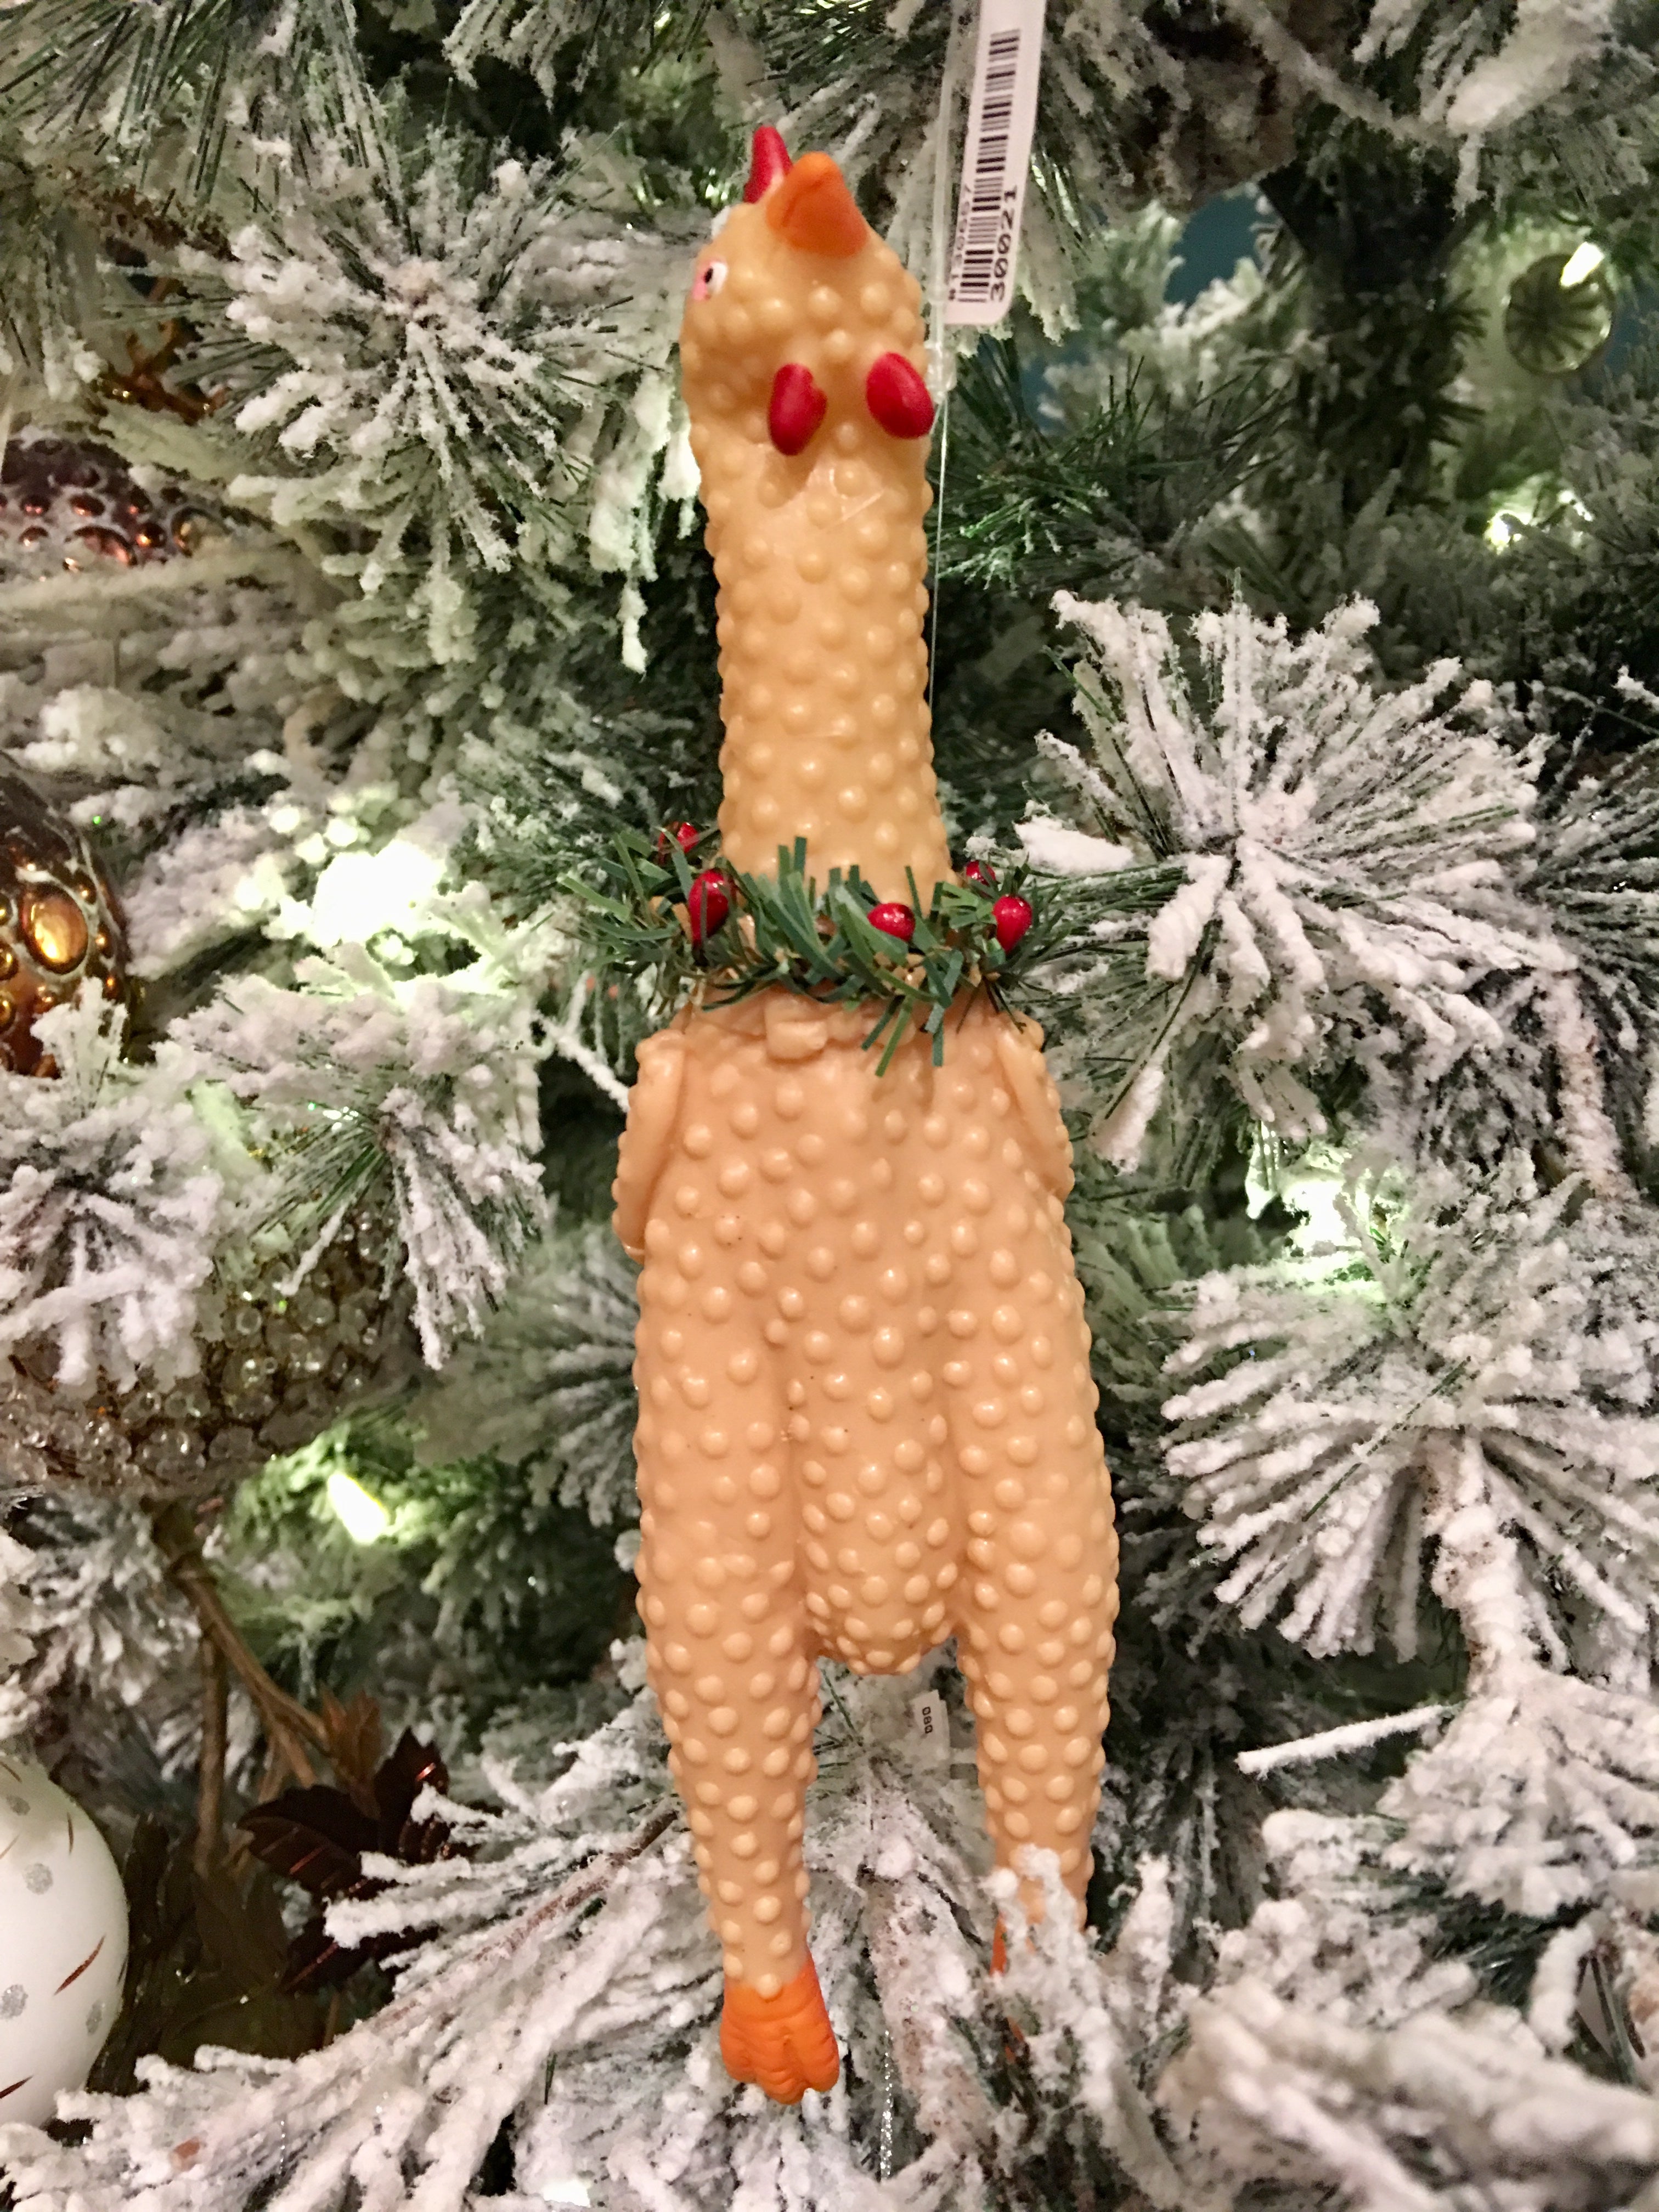 Rubber chicken ornament